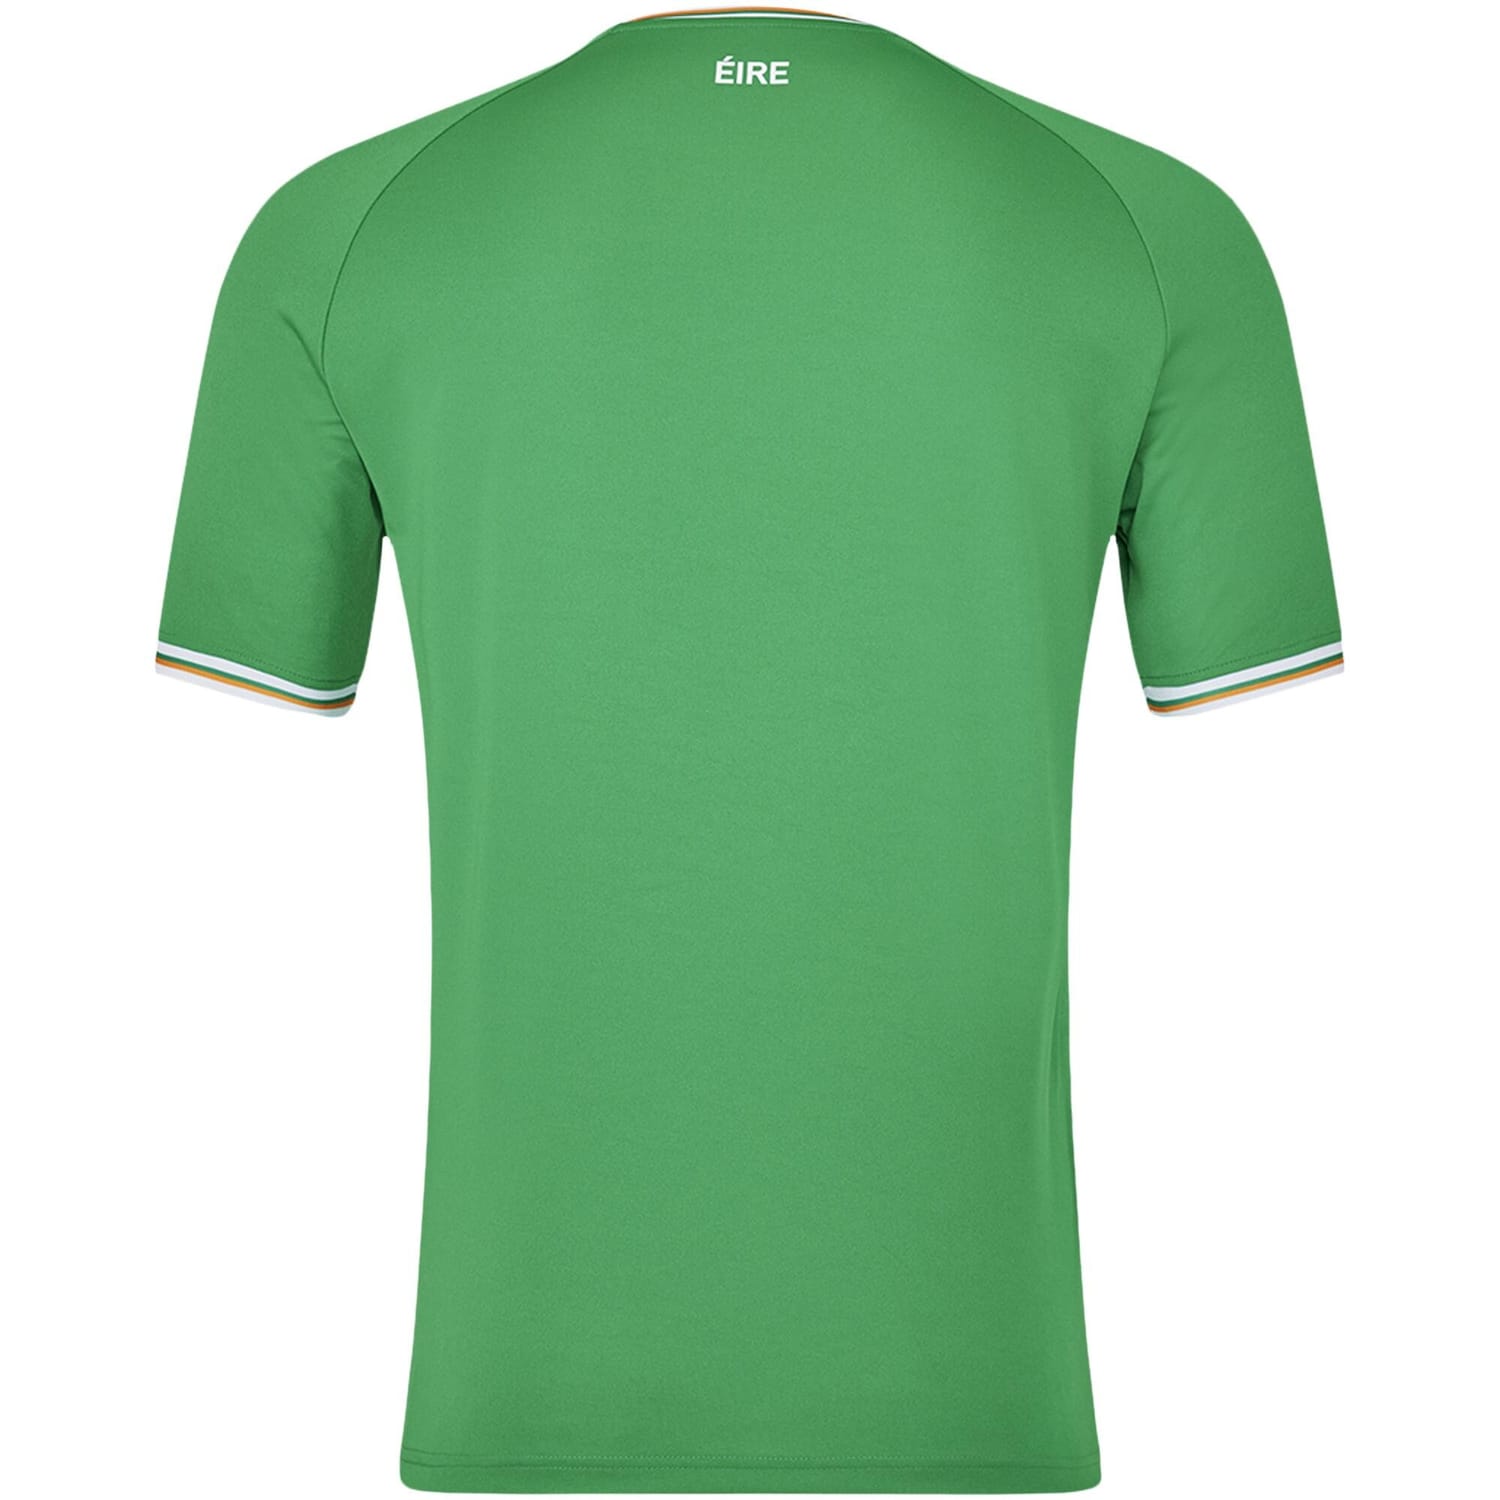 Ireland National Team Home Jersey Shirt 2023 for Men